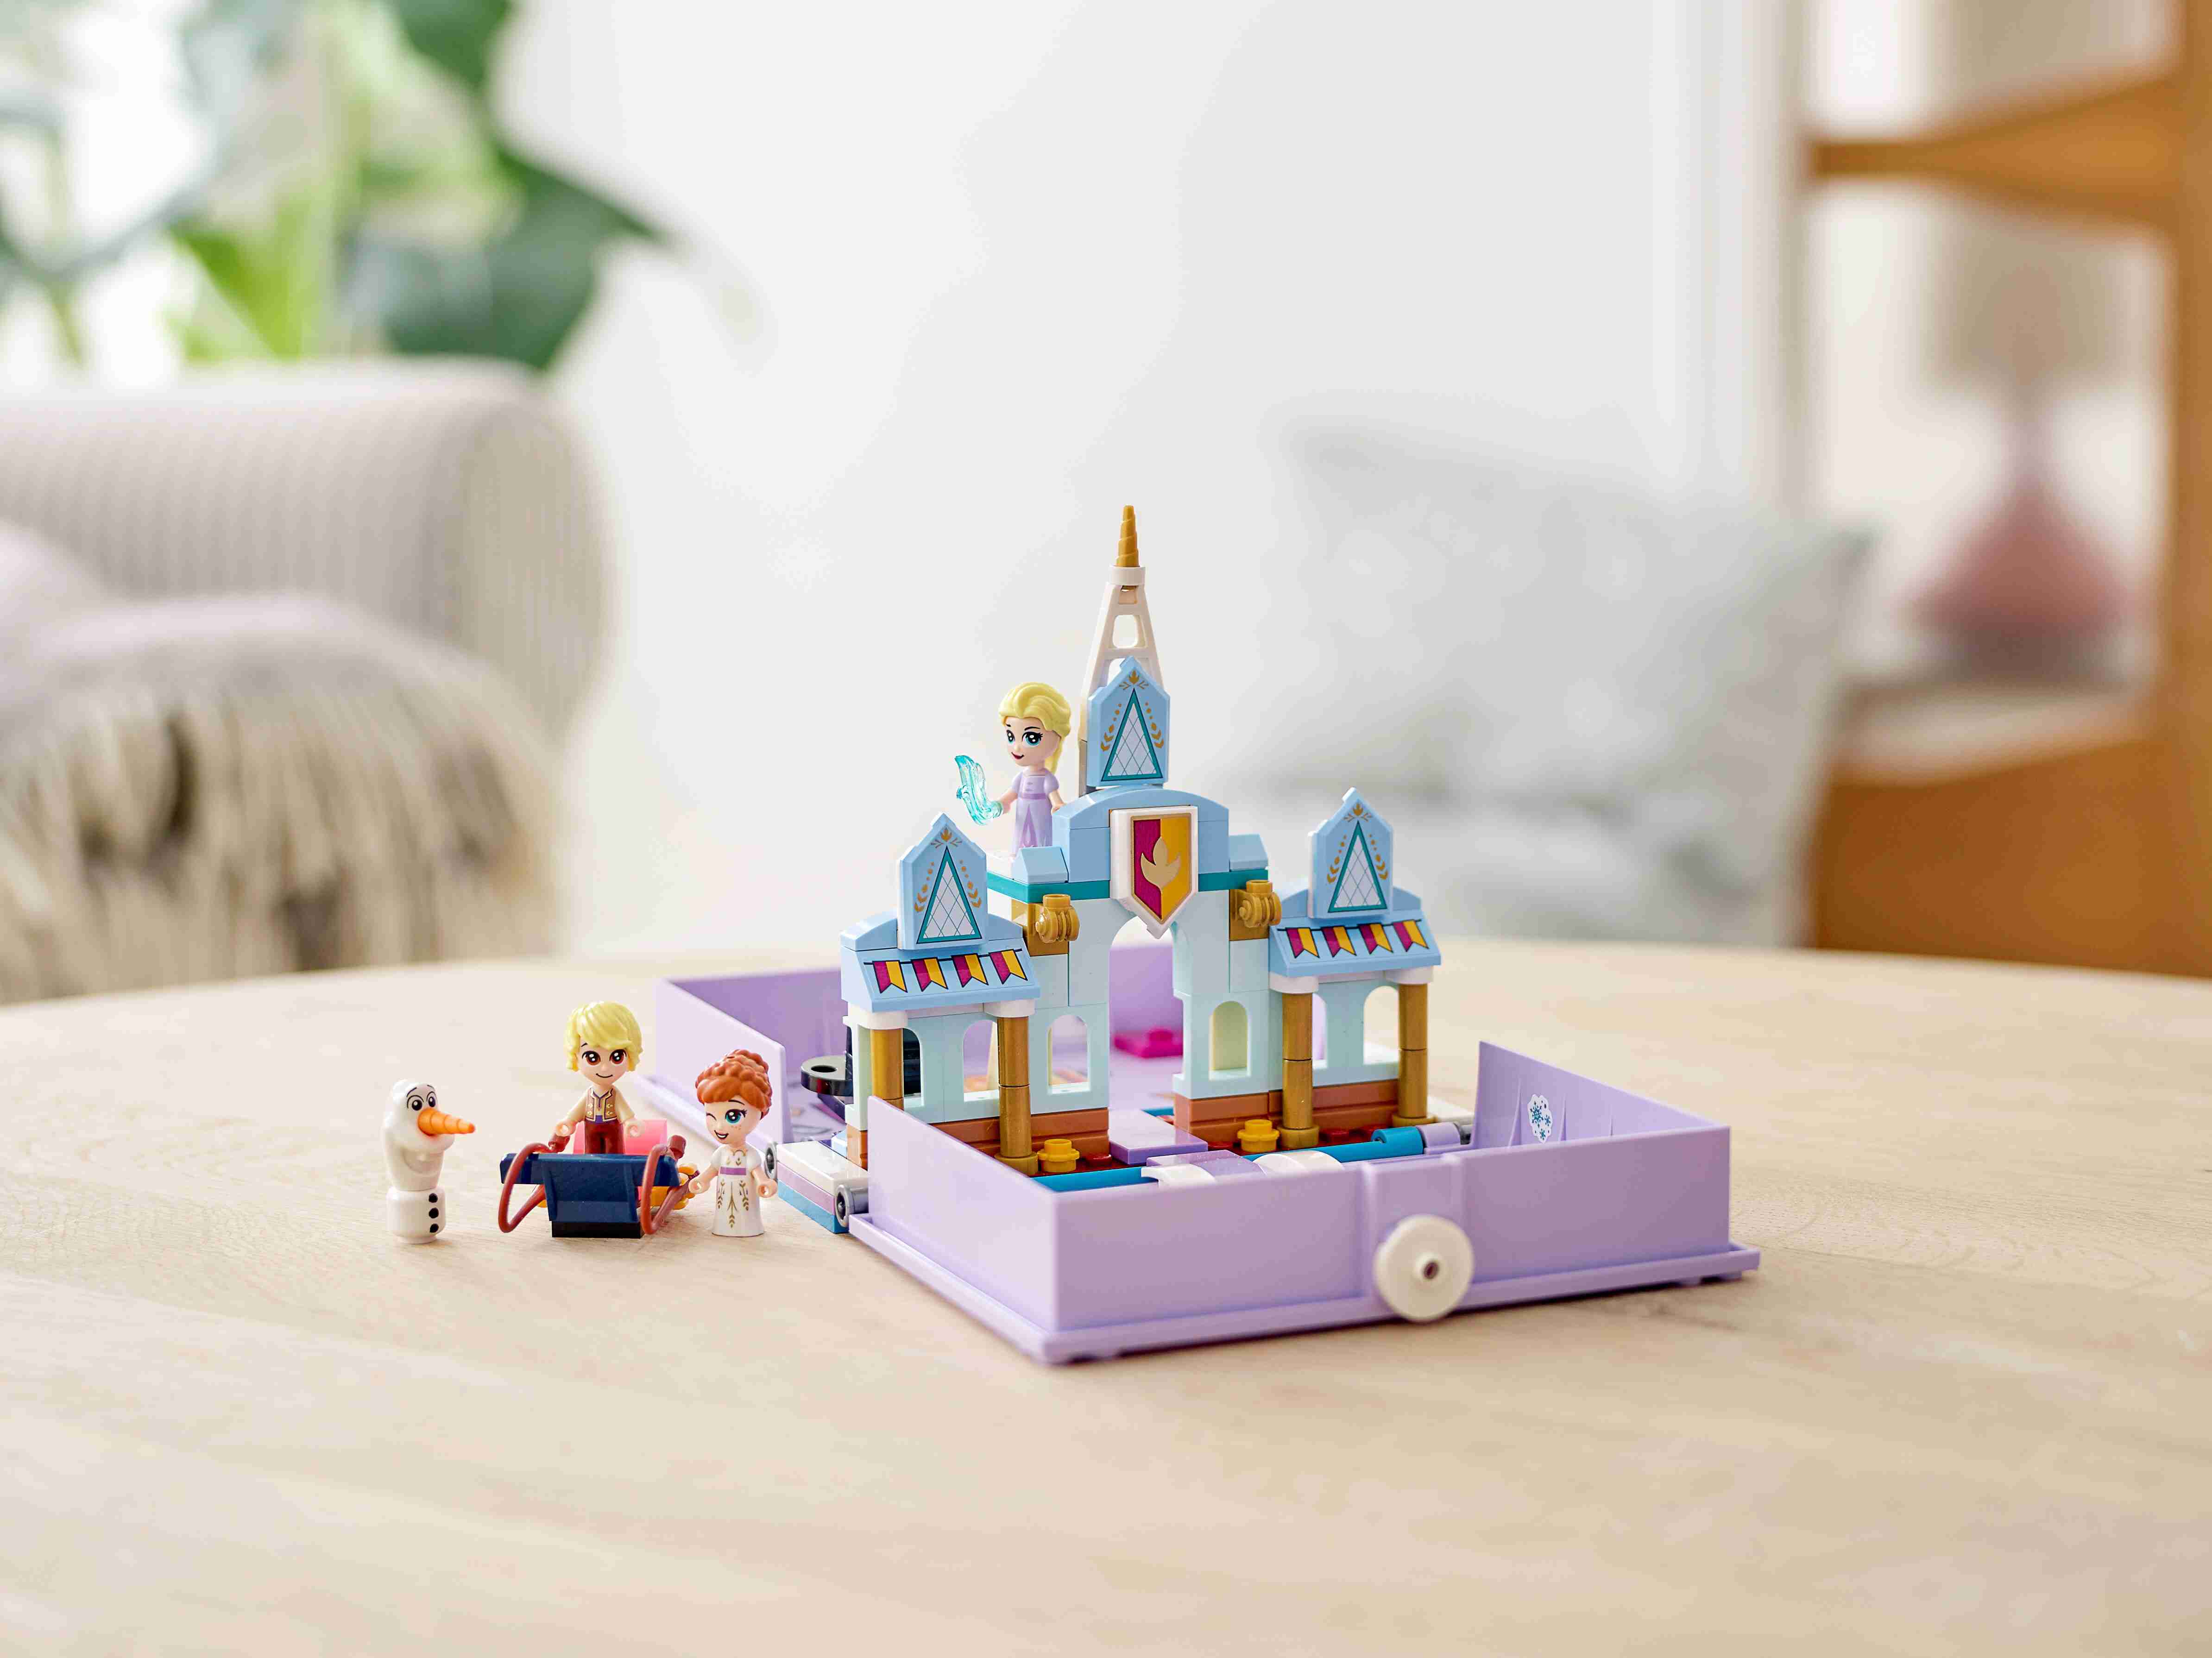 LEGO 43175 Disney Princess Frozen Die Eiskönigin II Annas und Elsas Märchenbuch